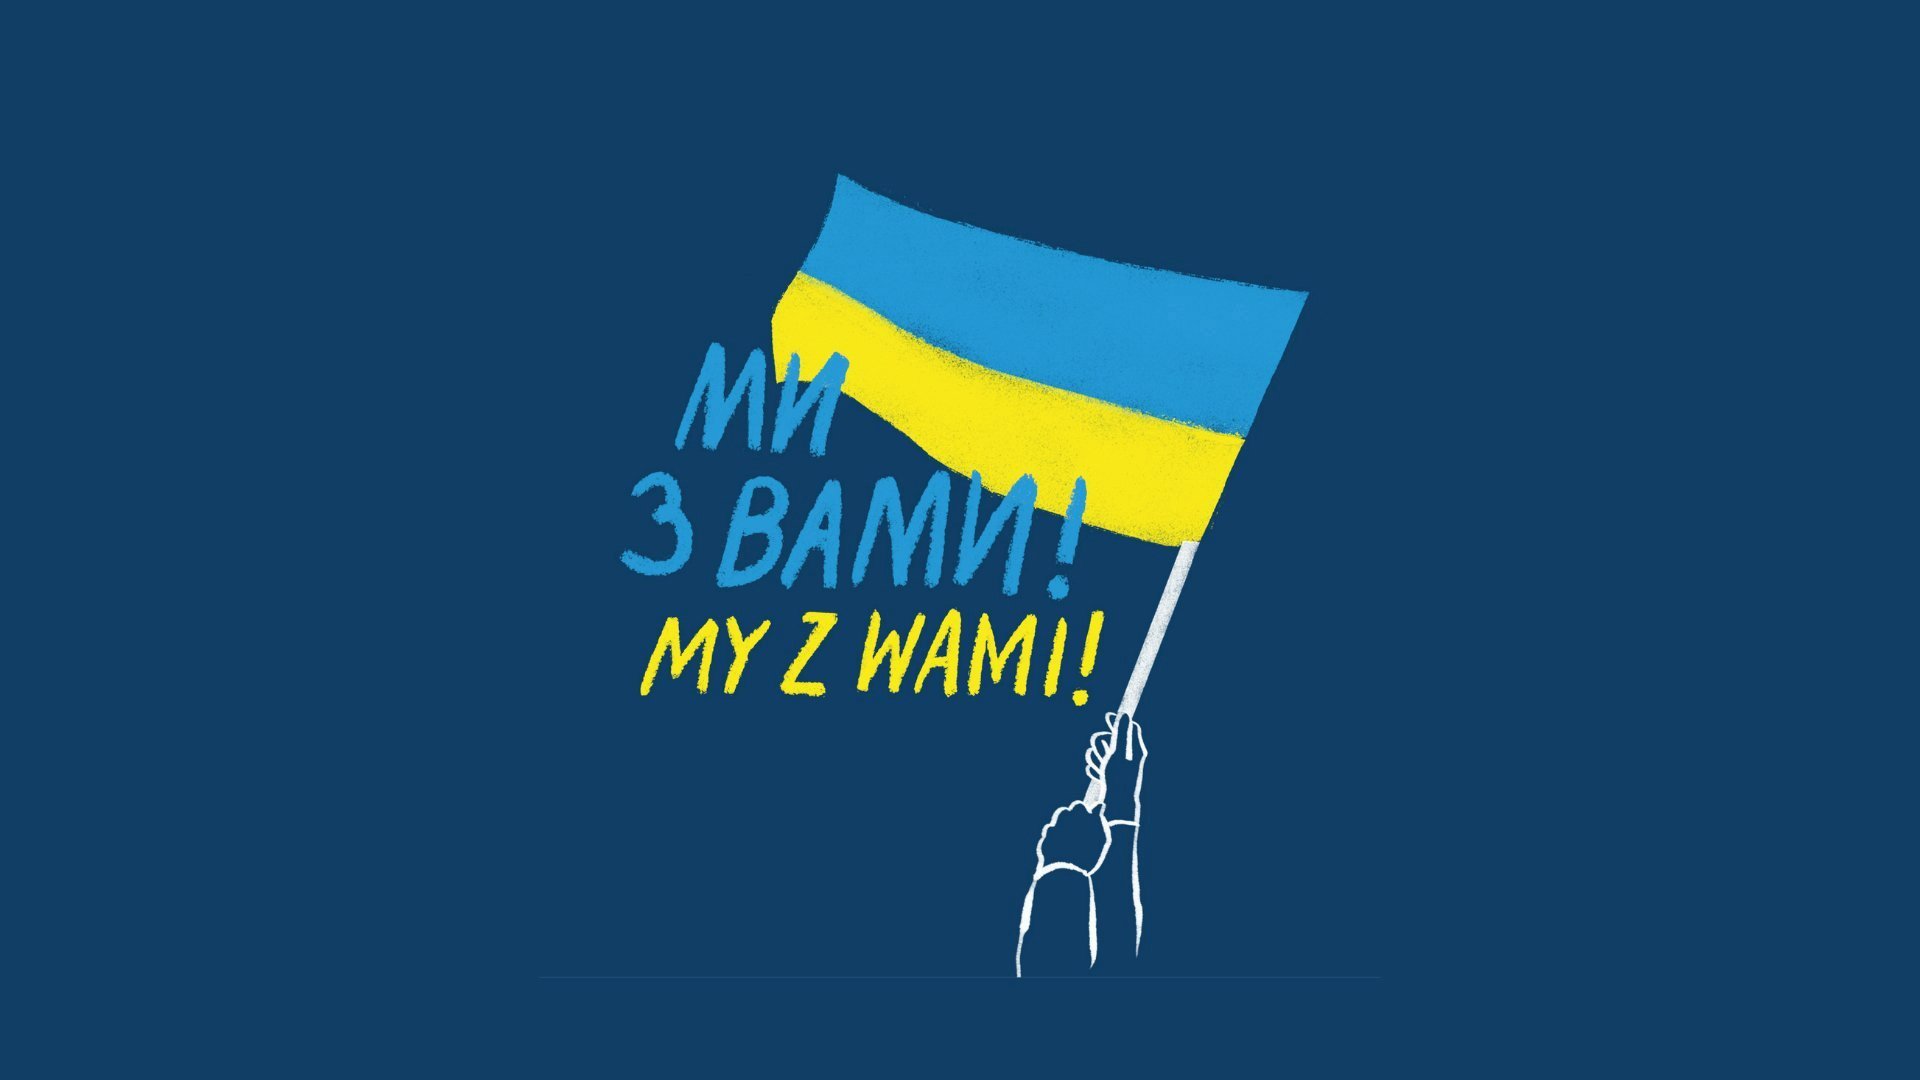 Grafika przedstawia flagę Ukrainy, a pod nią napis w j. polskim i j. ukriańskim - "My z Wami". - grafika artykułu